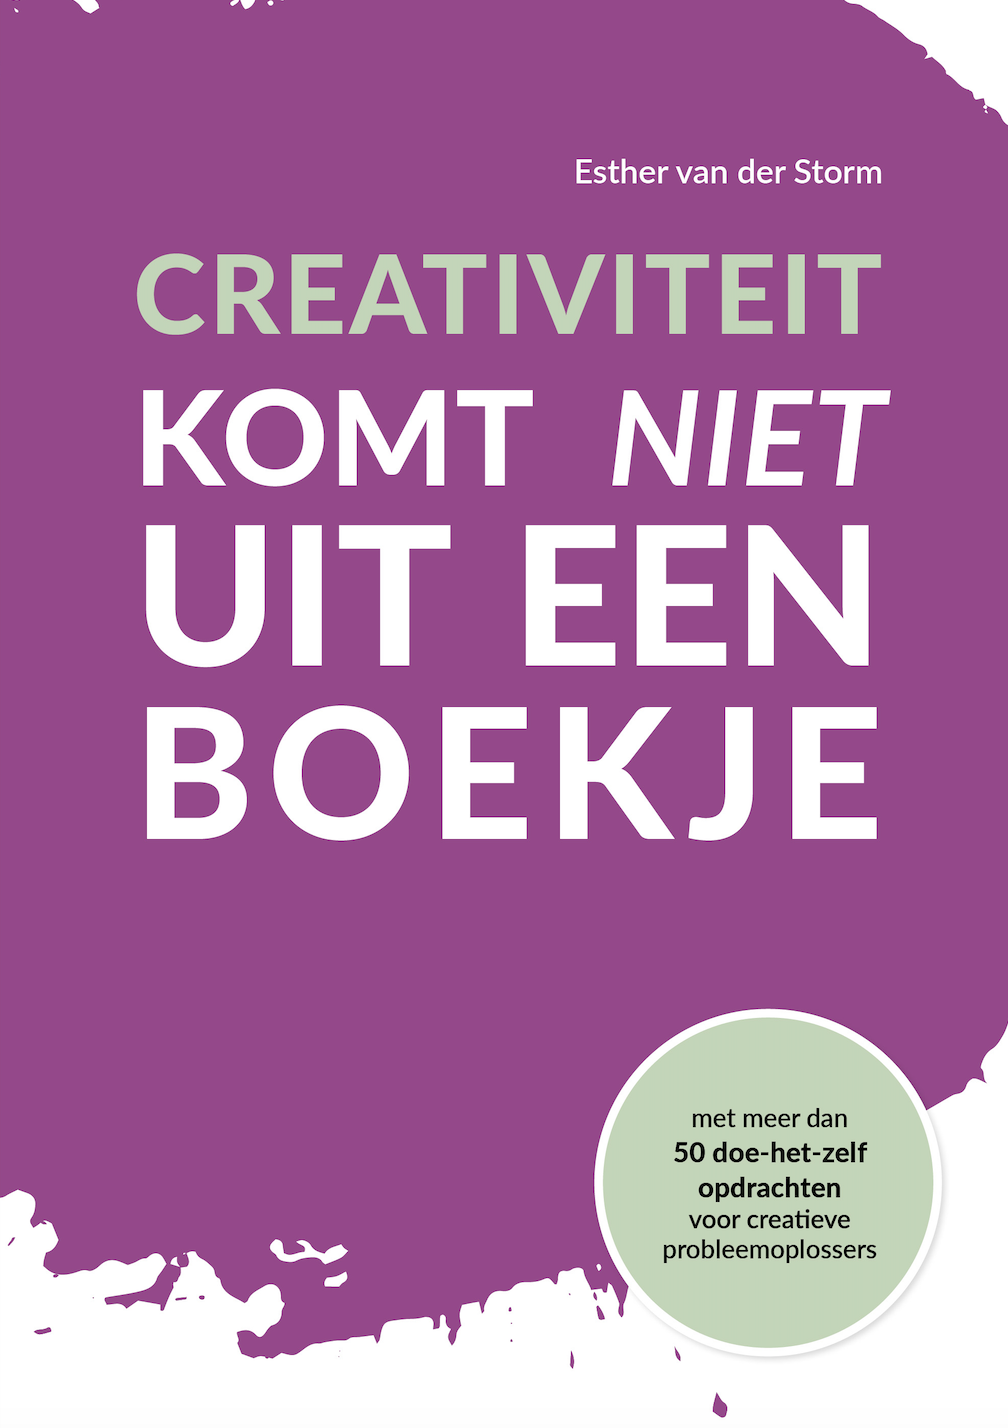 'Creativiteit komt niet uit een boekje' door Esther van der Storm